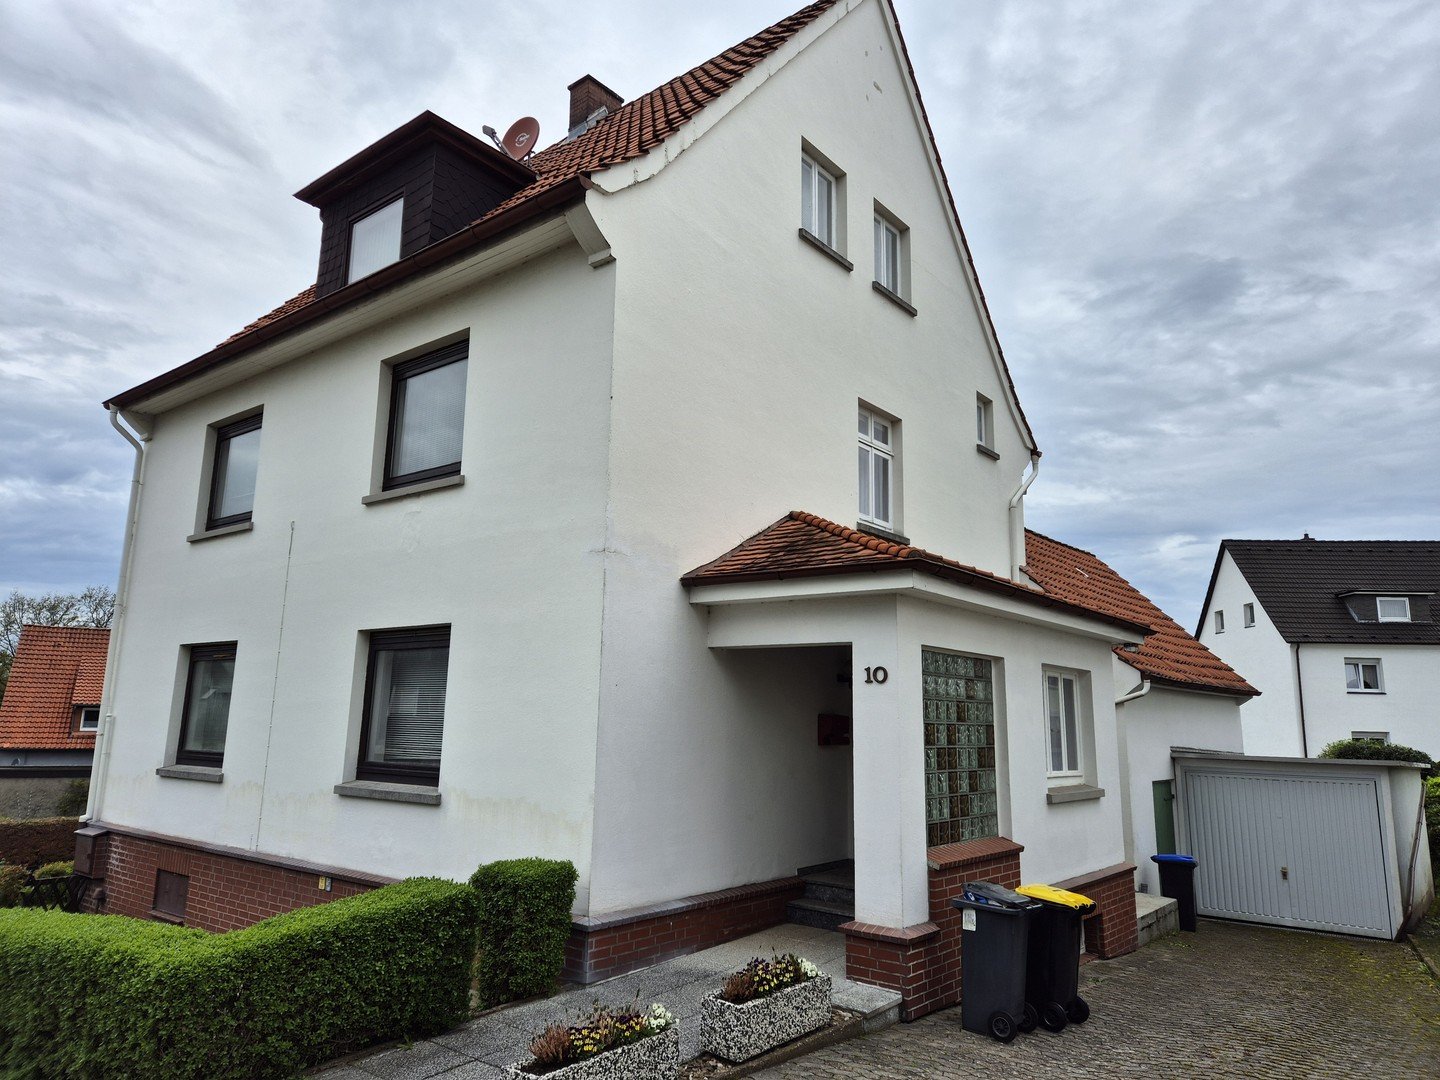 von Privat: Zwei- oder Dreifamilienhaus in ruhiger aber zentraler Lage von Obernkirchen